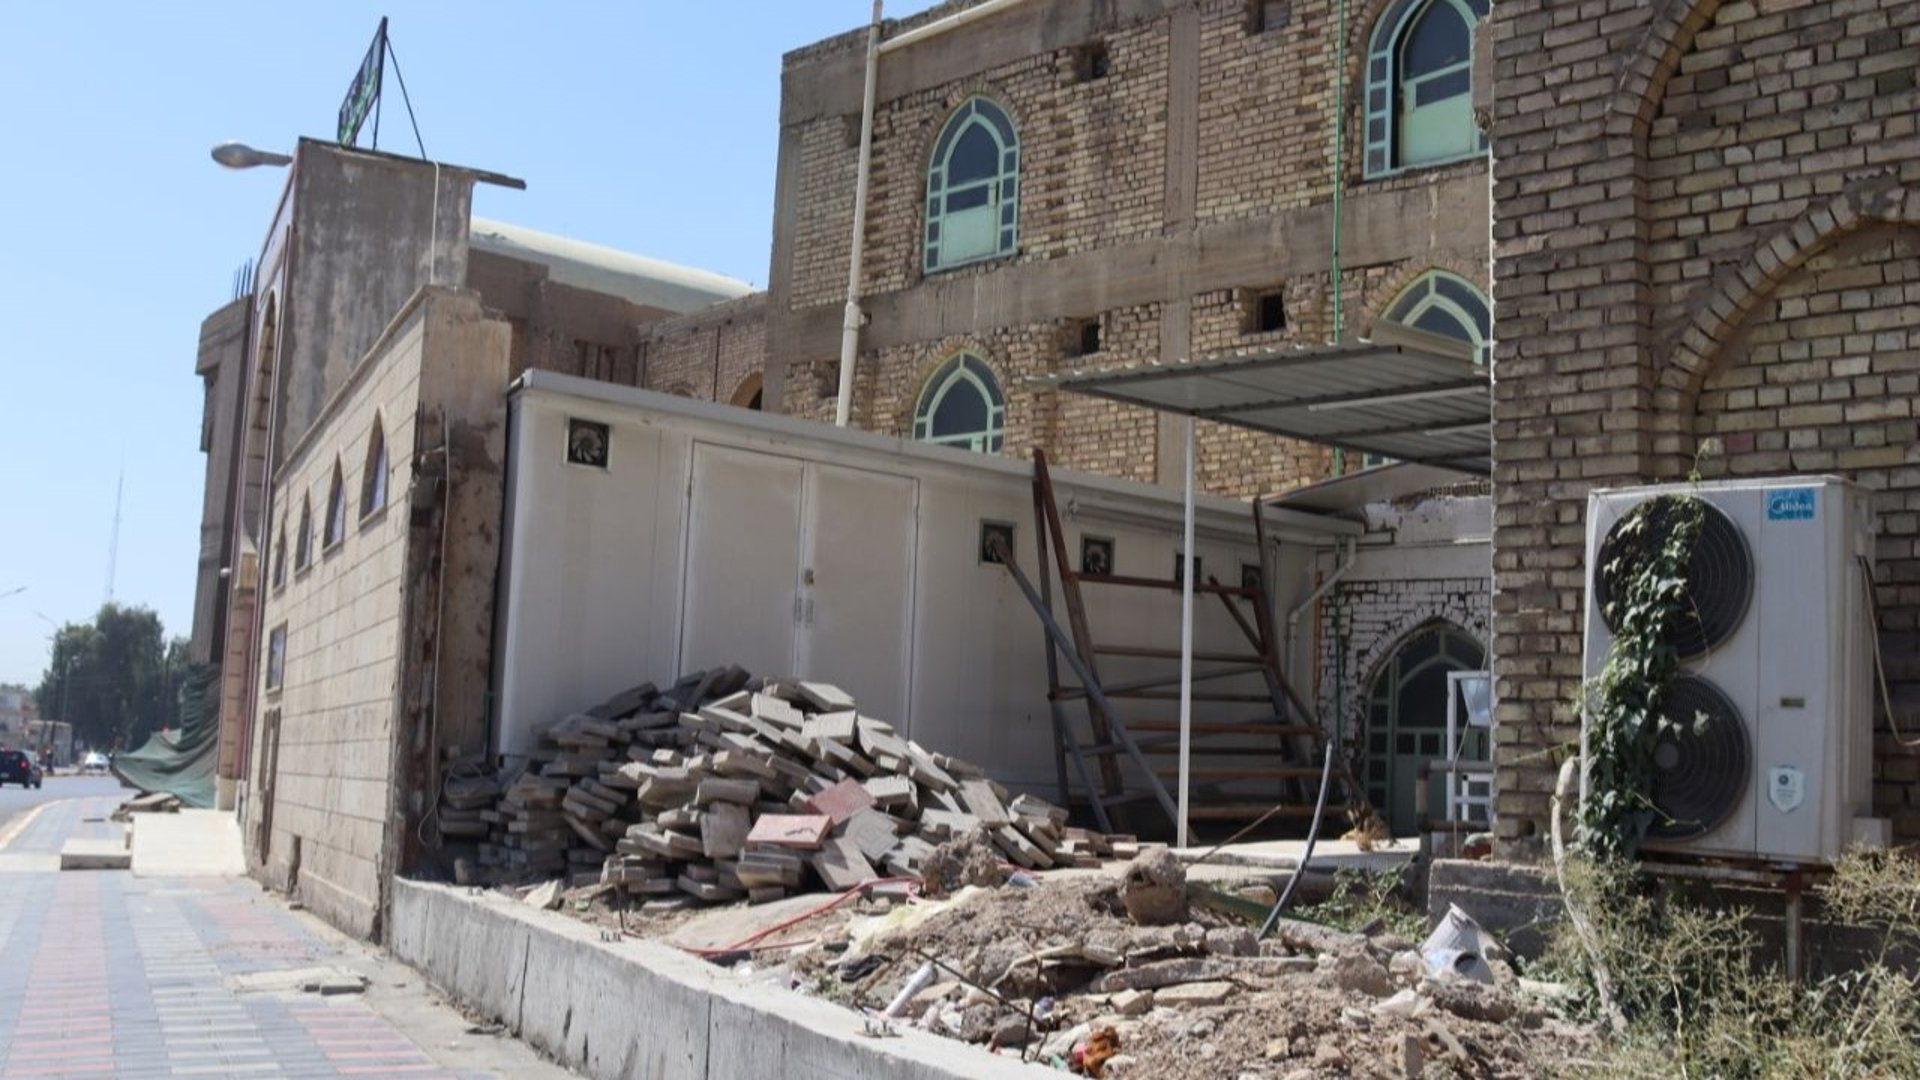 صور: ظهور مؤقت لقبر العلامة علي الوردي بعد إزالة صبات جامع براثا في بغداد »  +964